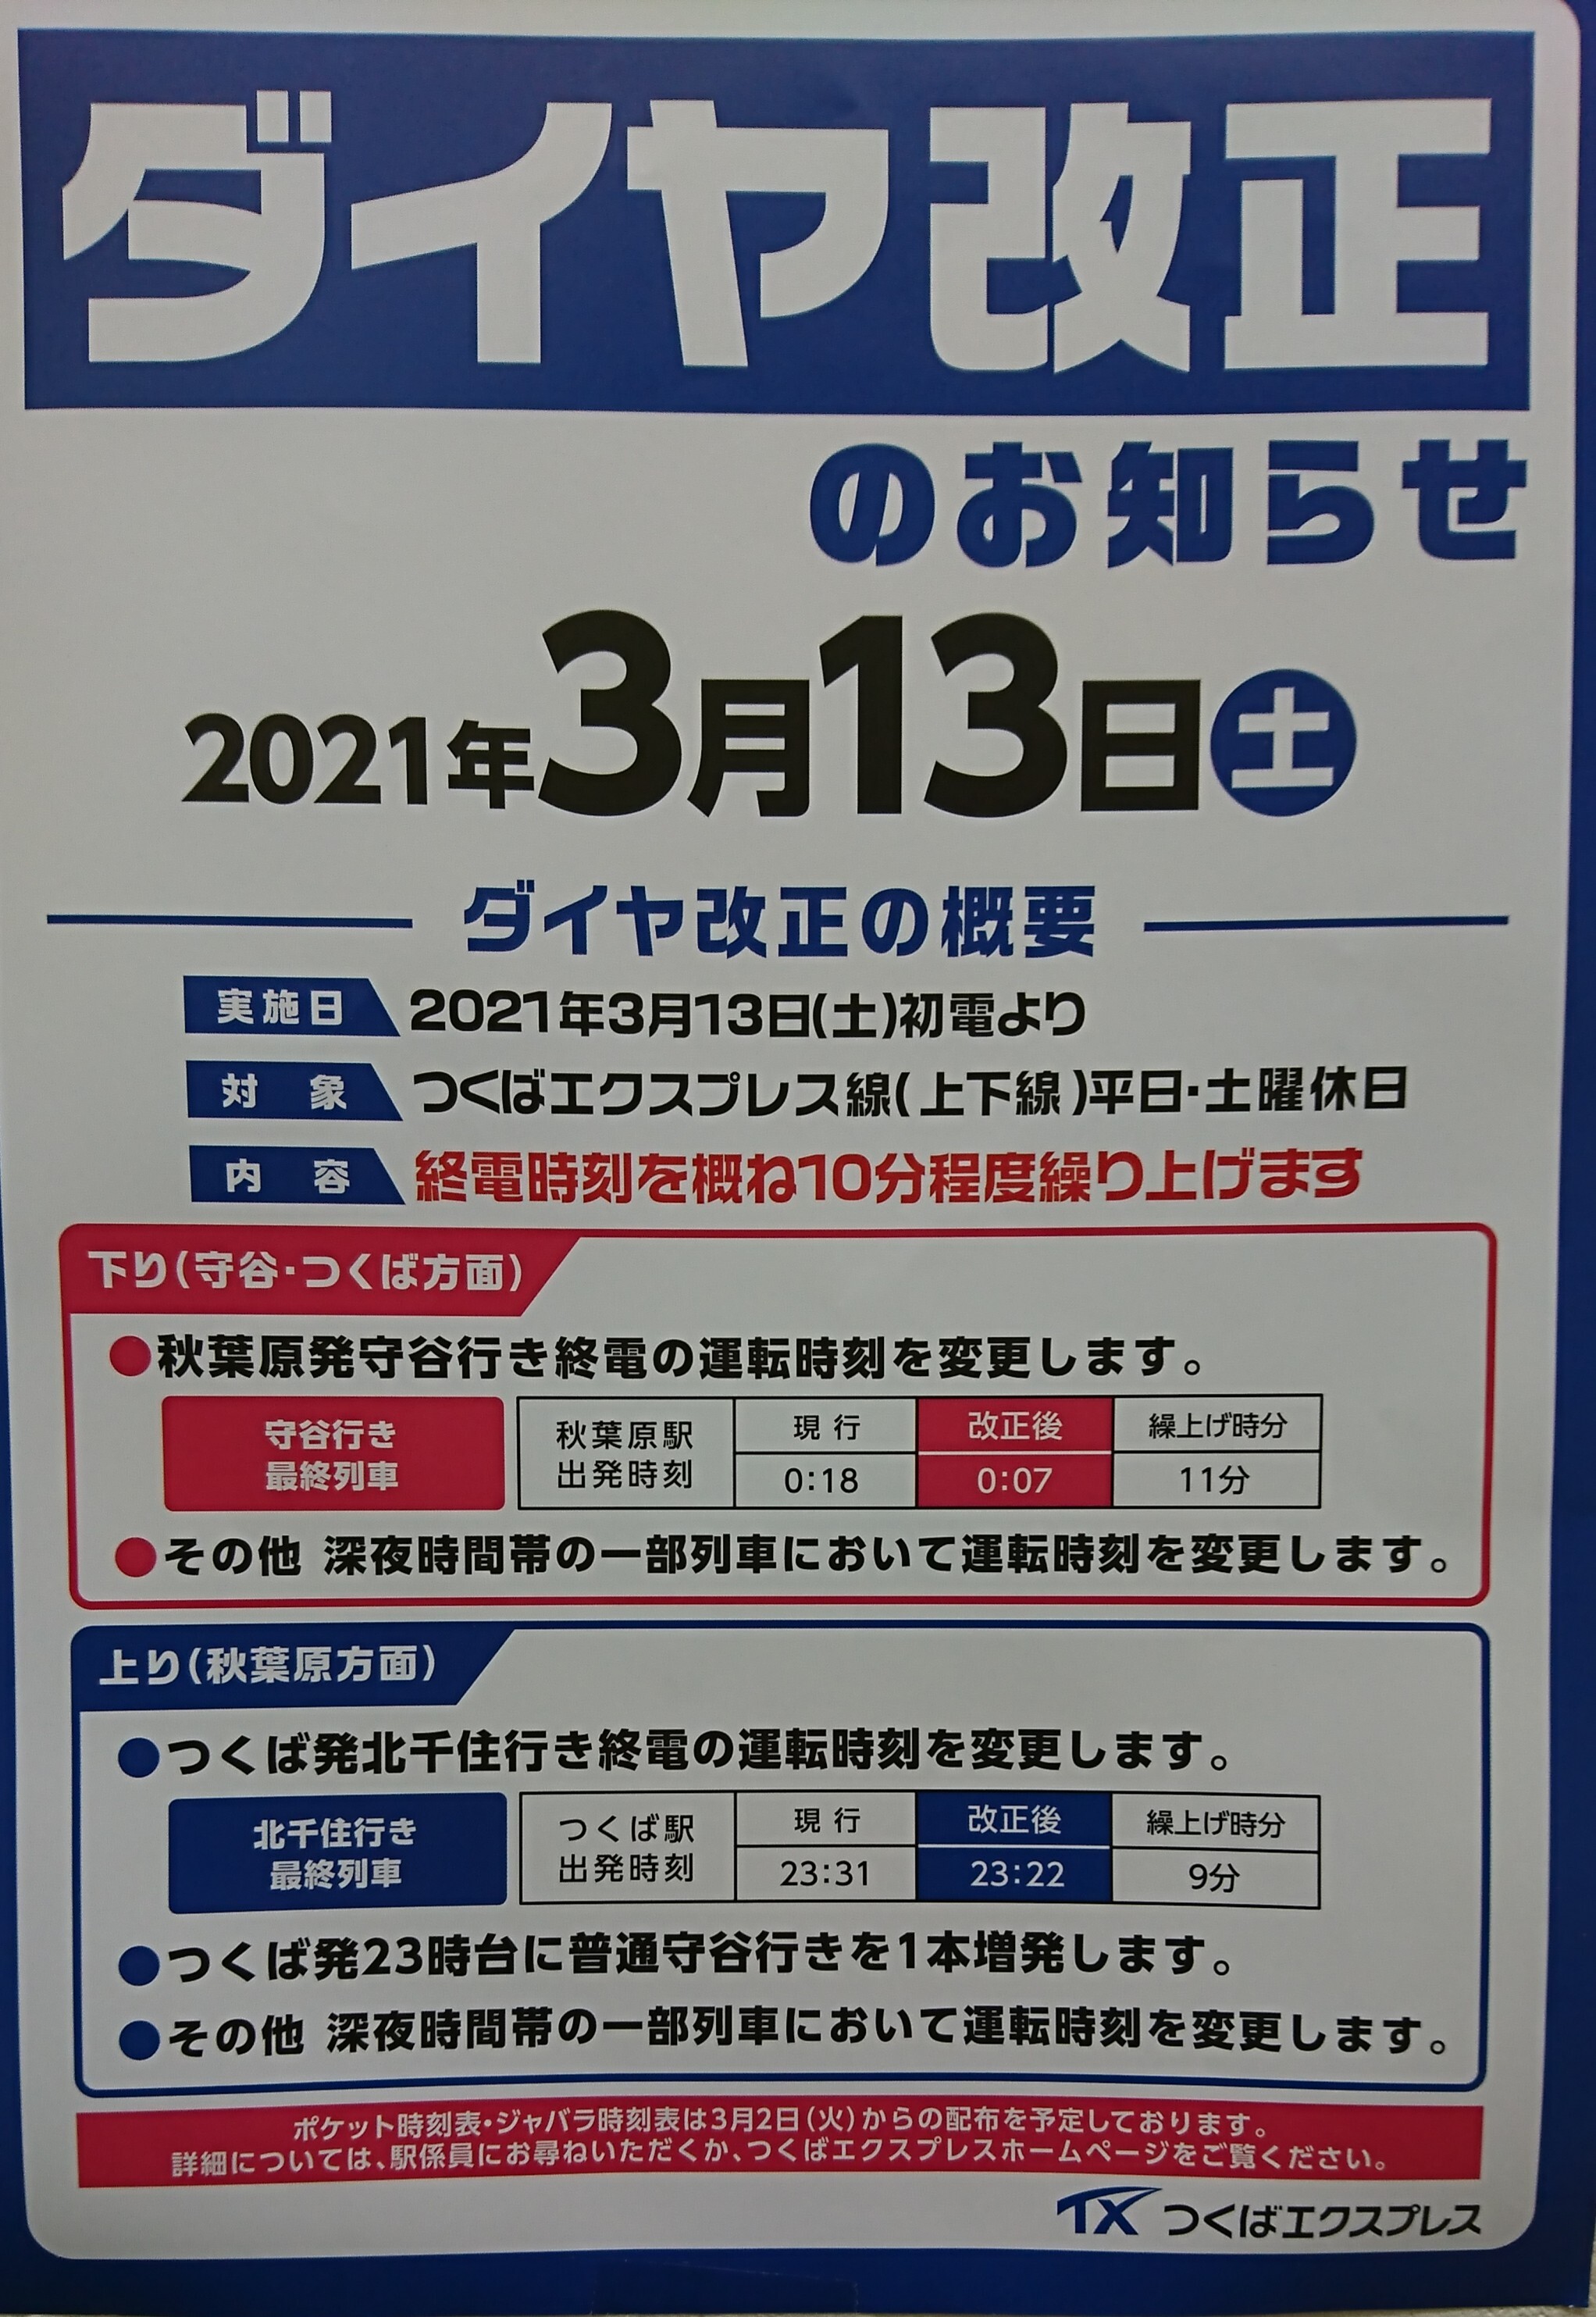 大曽根 駅 時刻 表